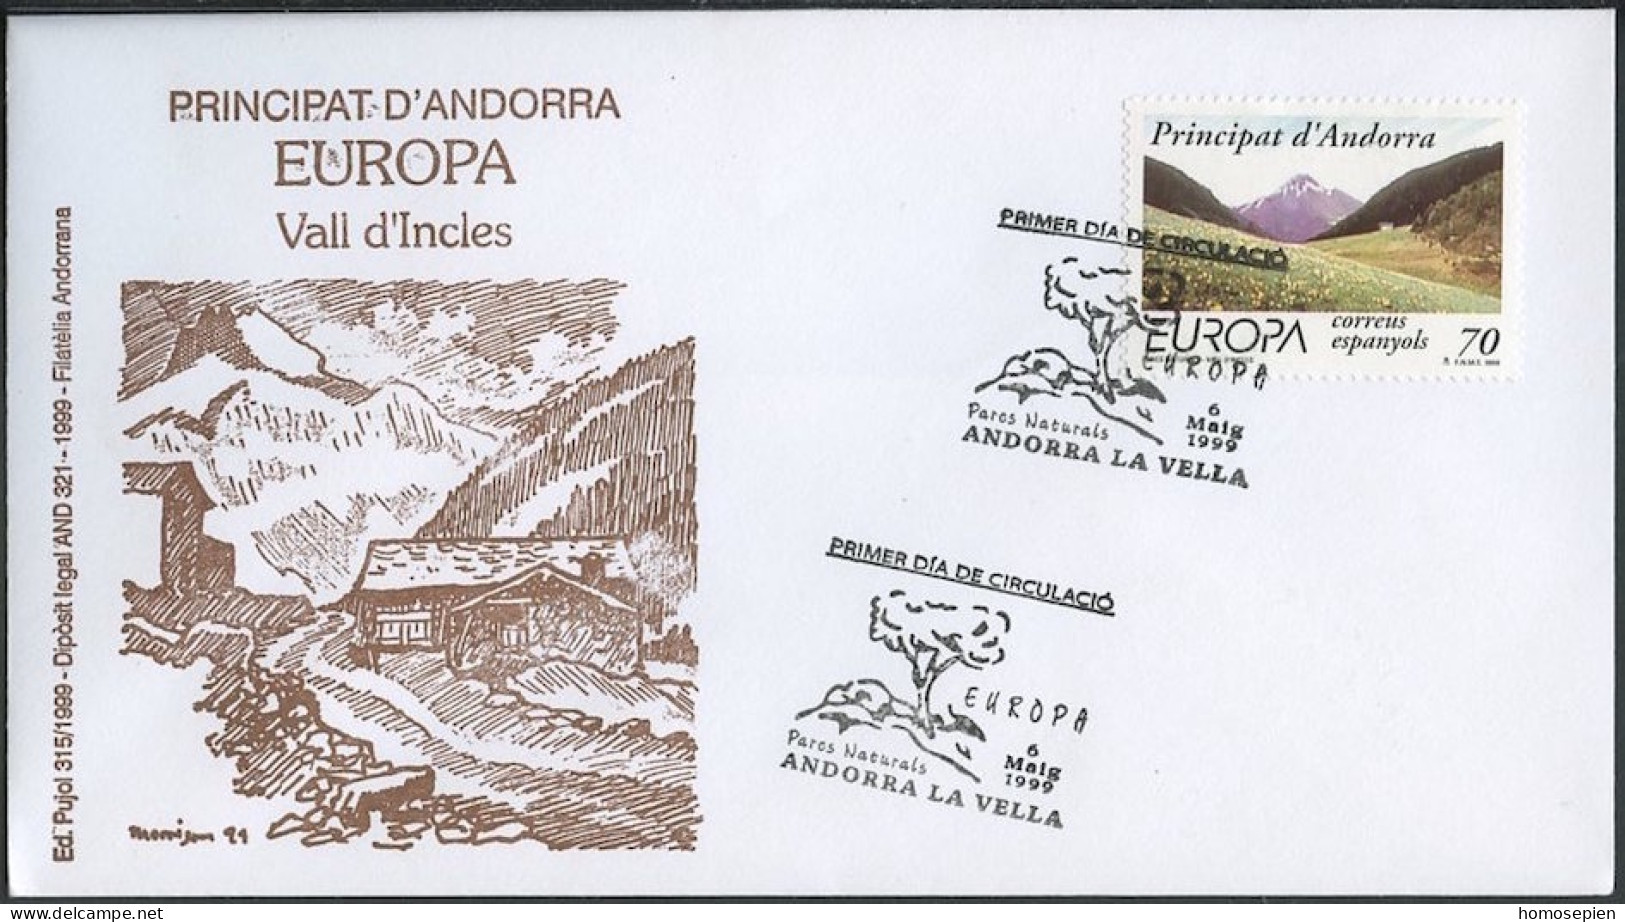 Europa CEPT 1999 Andorre Espagnol - Andorra FDC2 Y&T N°257 - Michel N°267 - 70p EUROPA - 1999